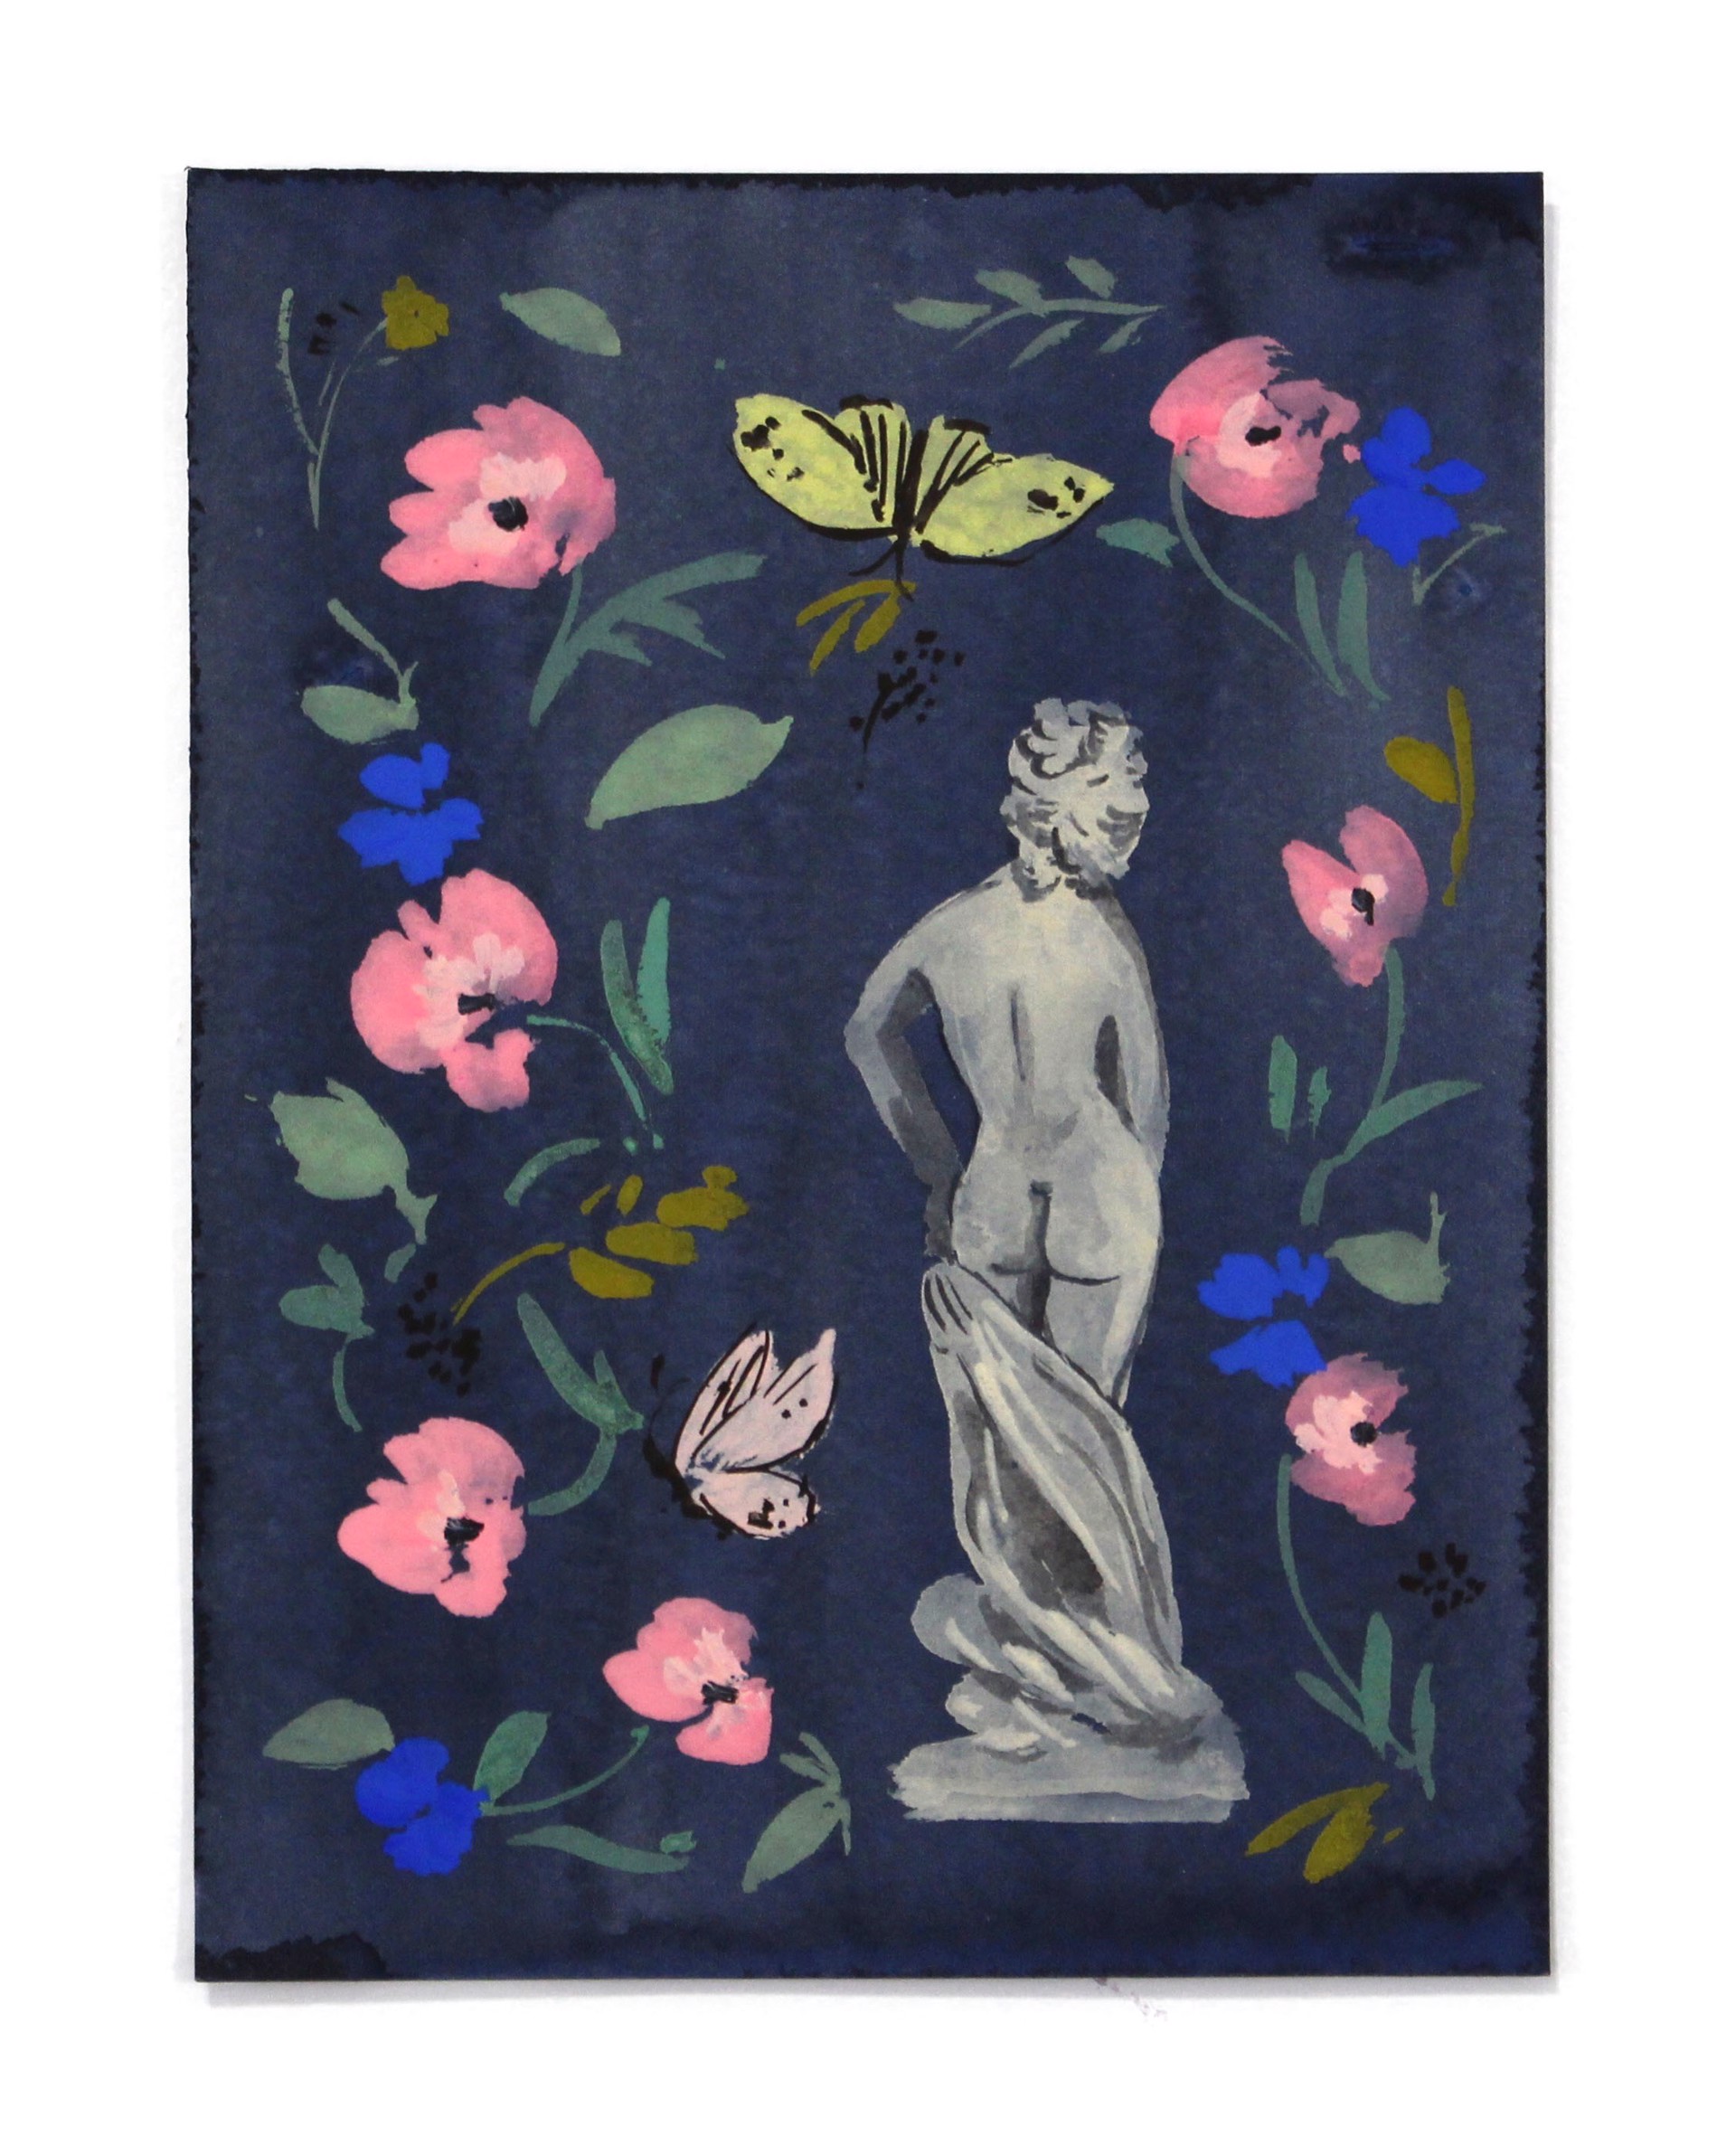 Women and Flowers IV by Kayla Plosz Antiel